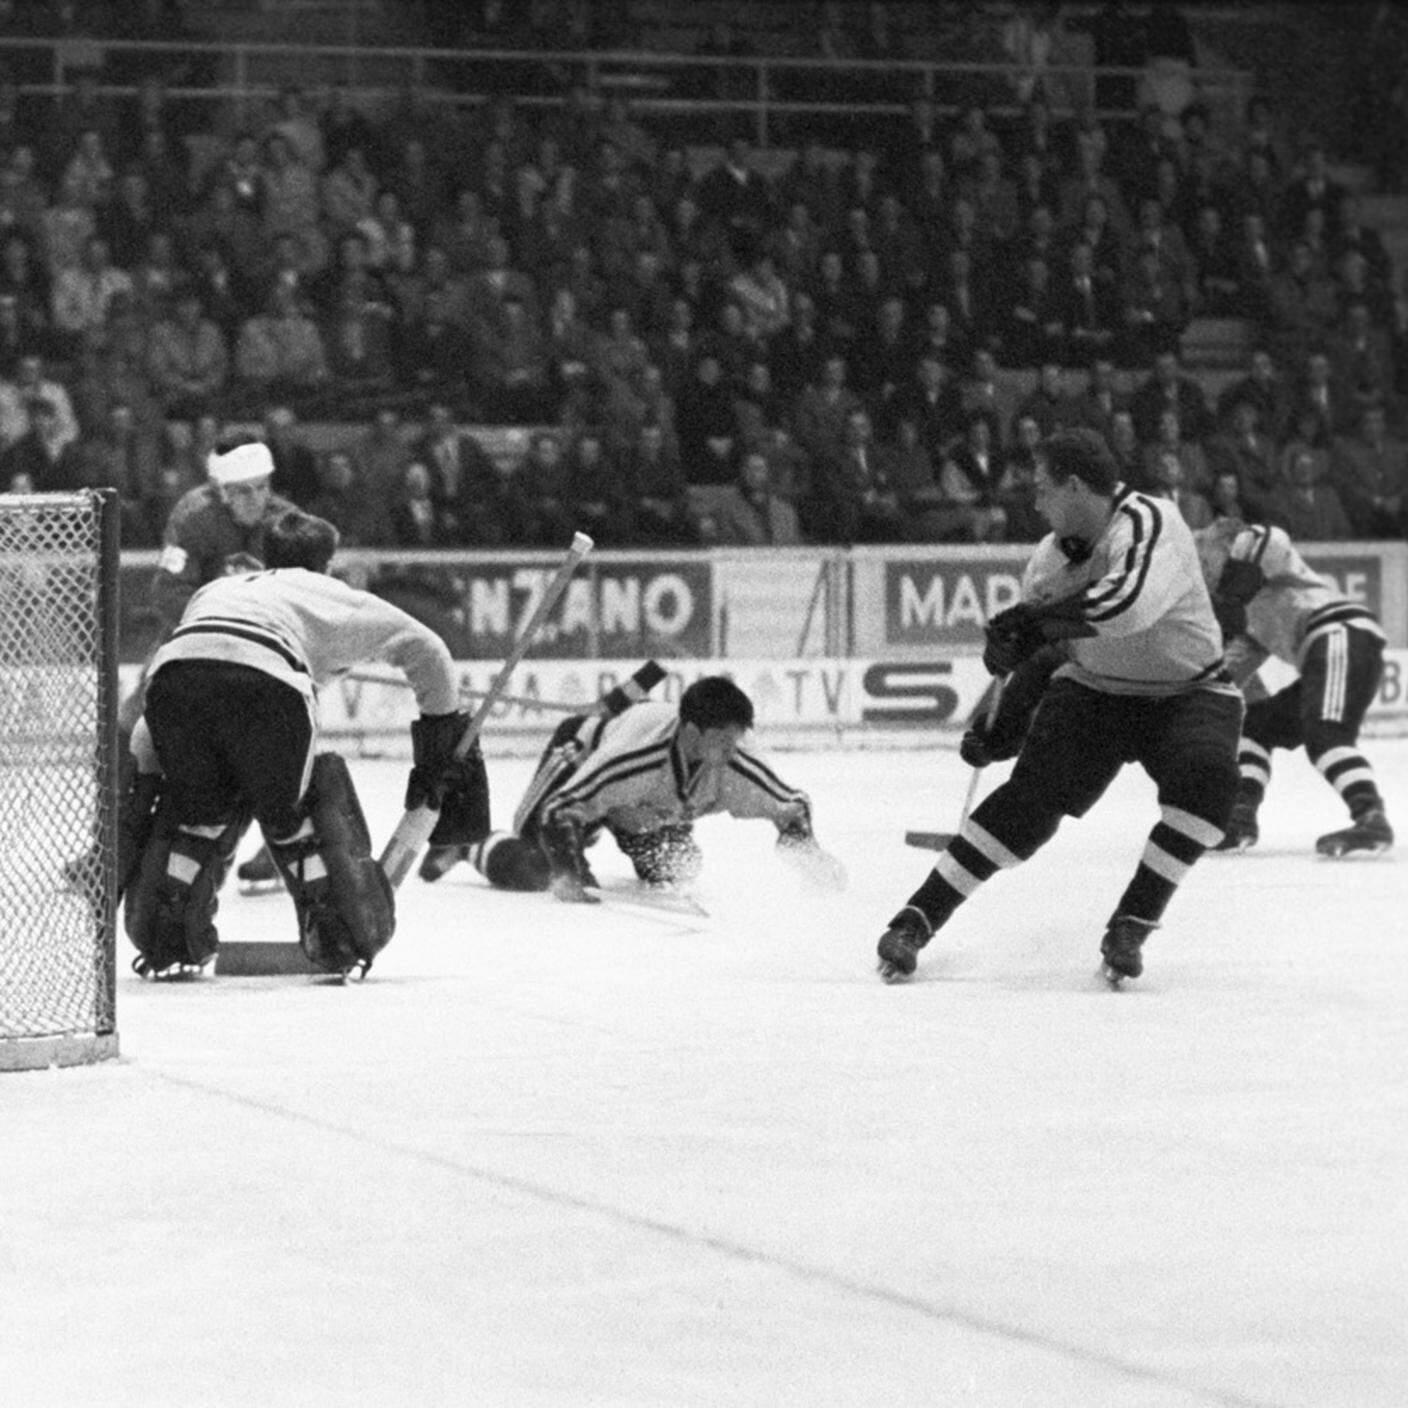 Stoccolma 1969, quando l'hockey sconfisse la repressione 